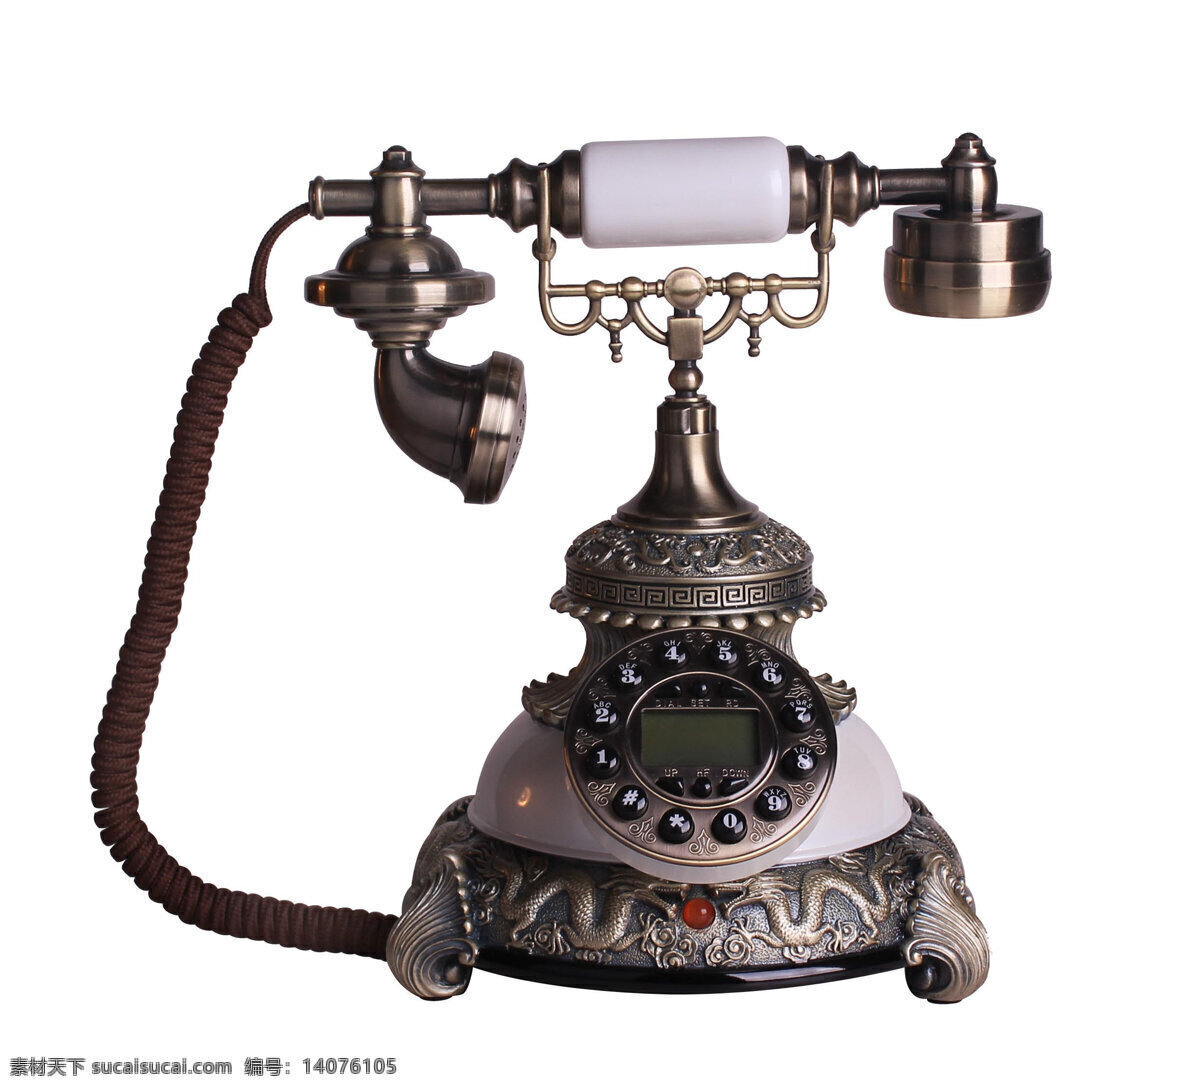 电话 座机 仿古电话 复古电话 华贵 高雅 奢华 生活素材 生活百科